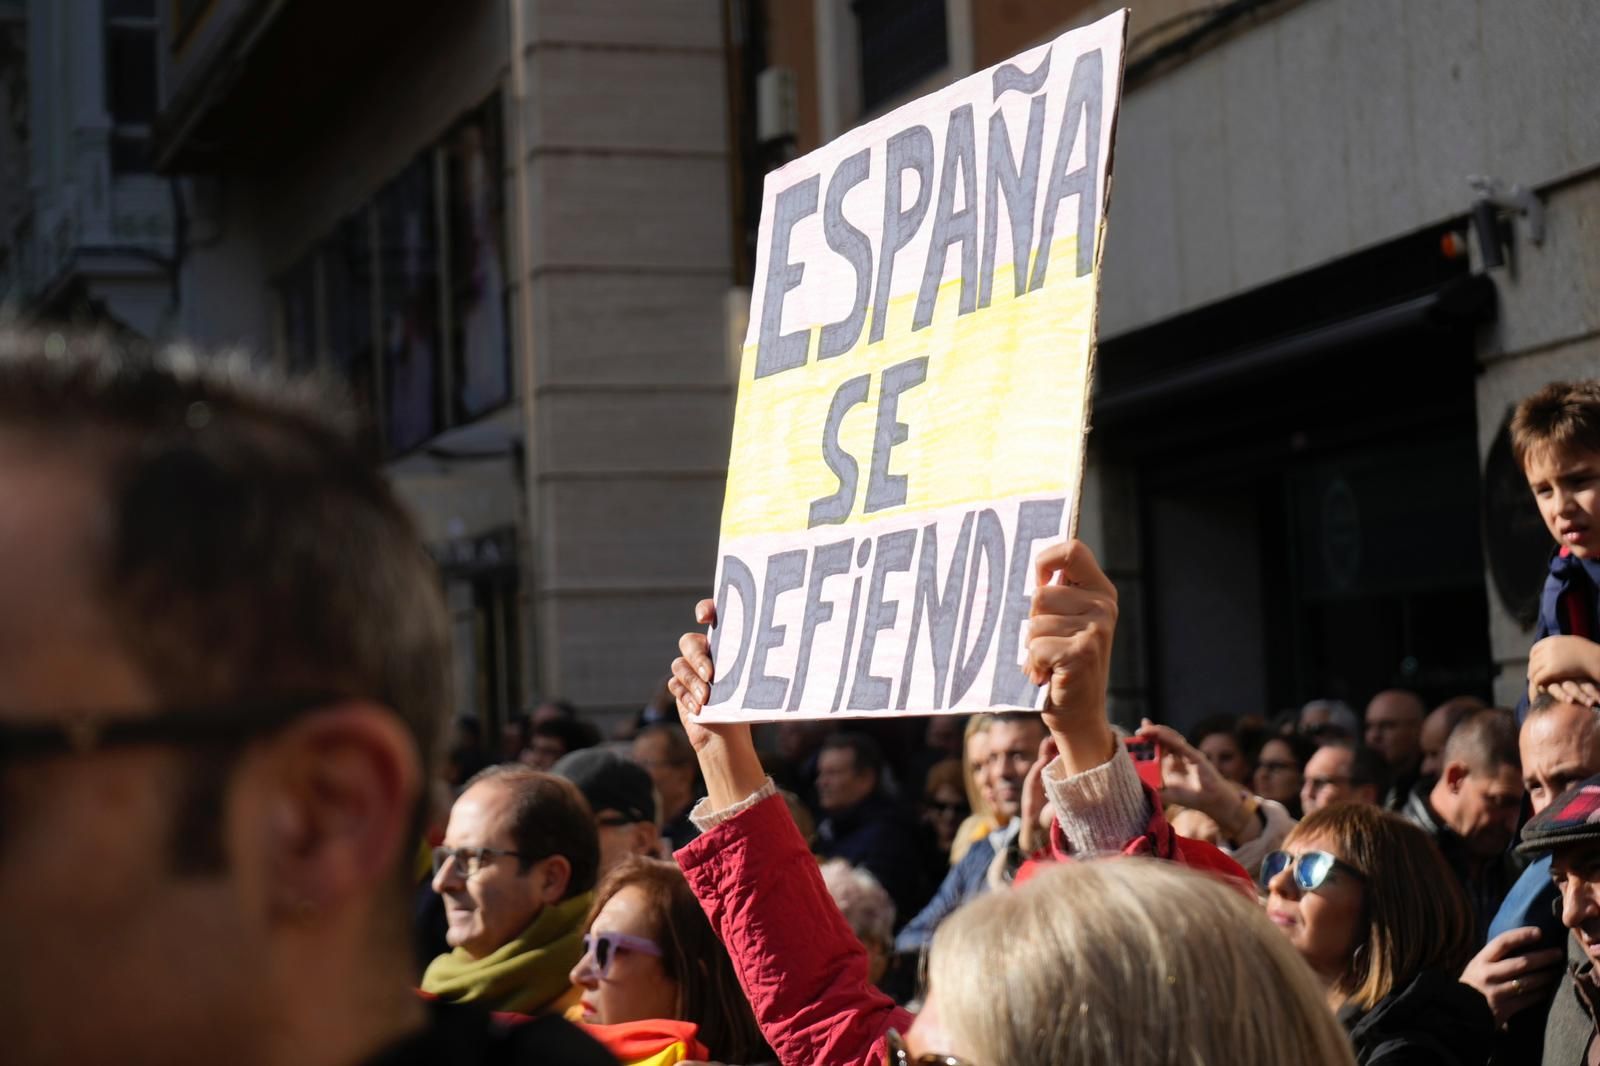 GALERÍA | La manifestación contra la amnistía de Pedro Sánchez, en imágenes